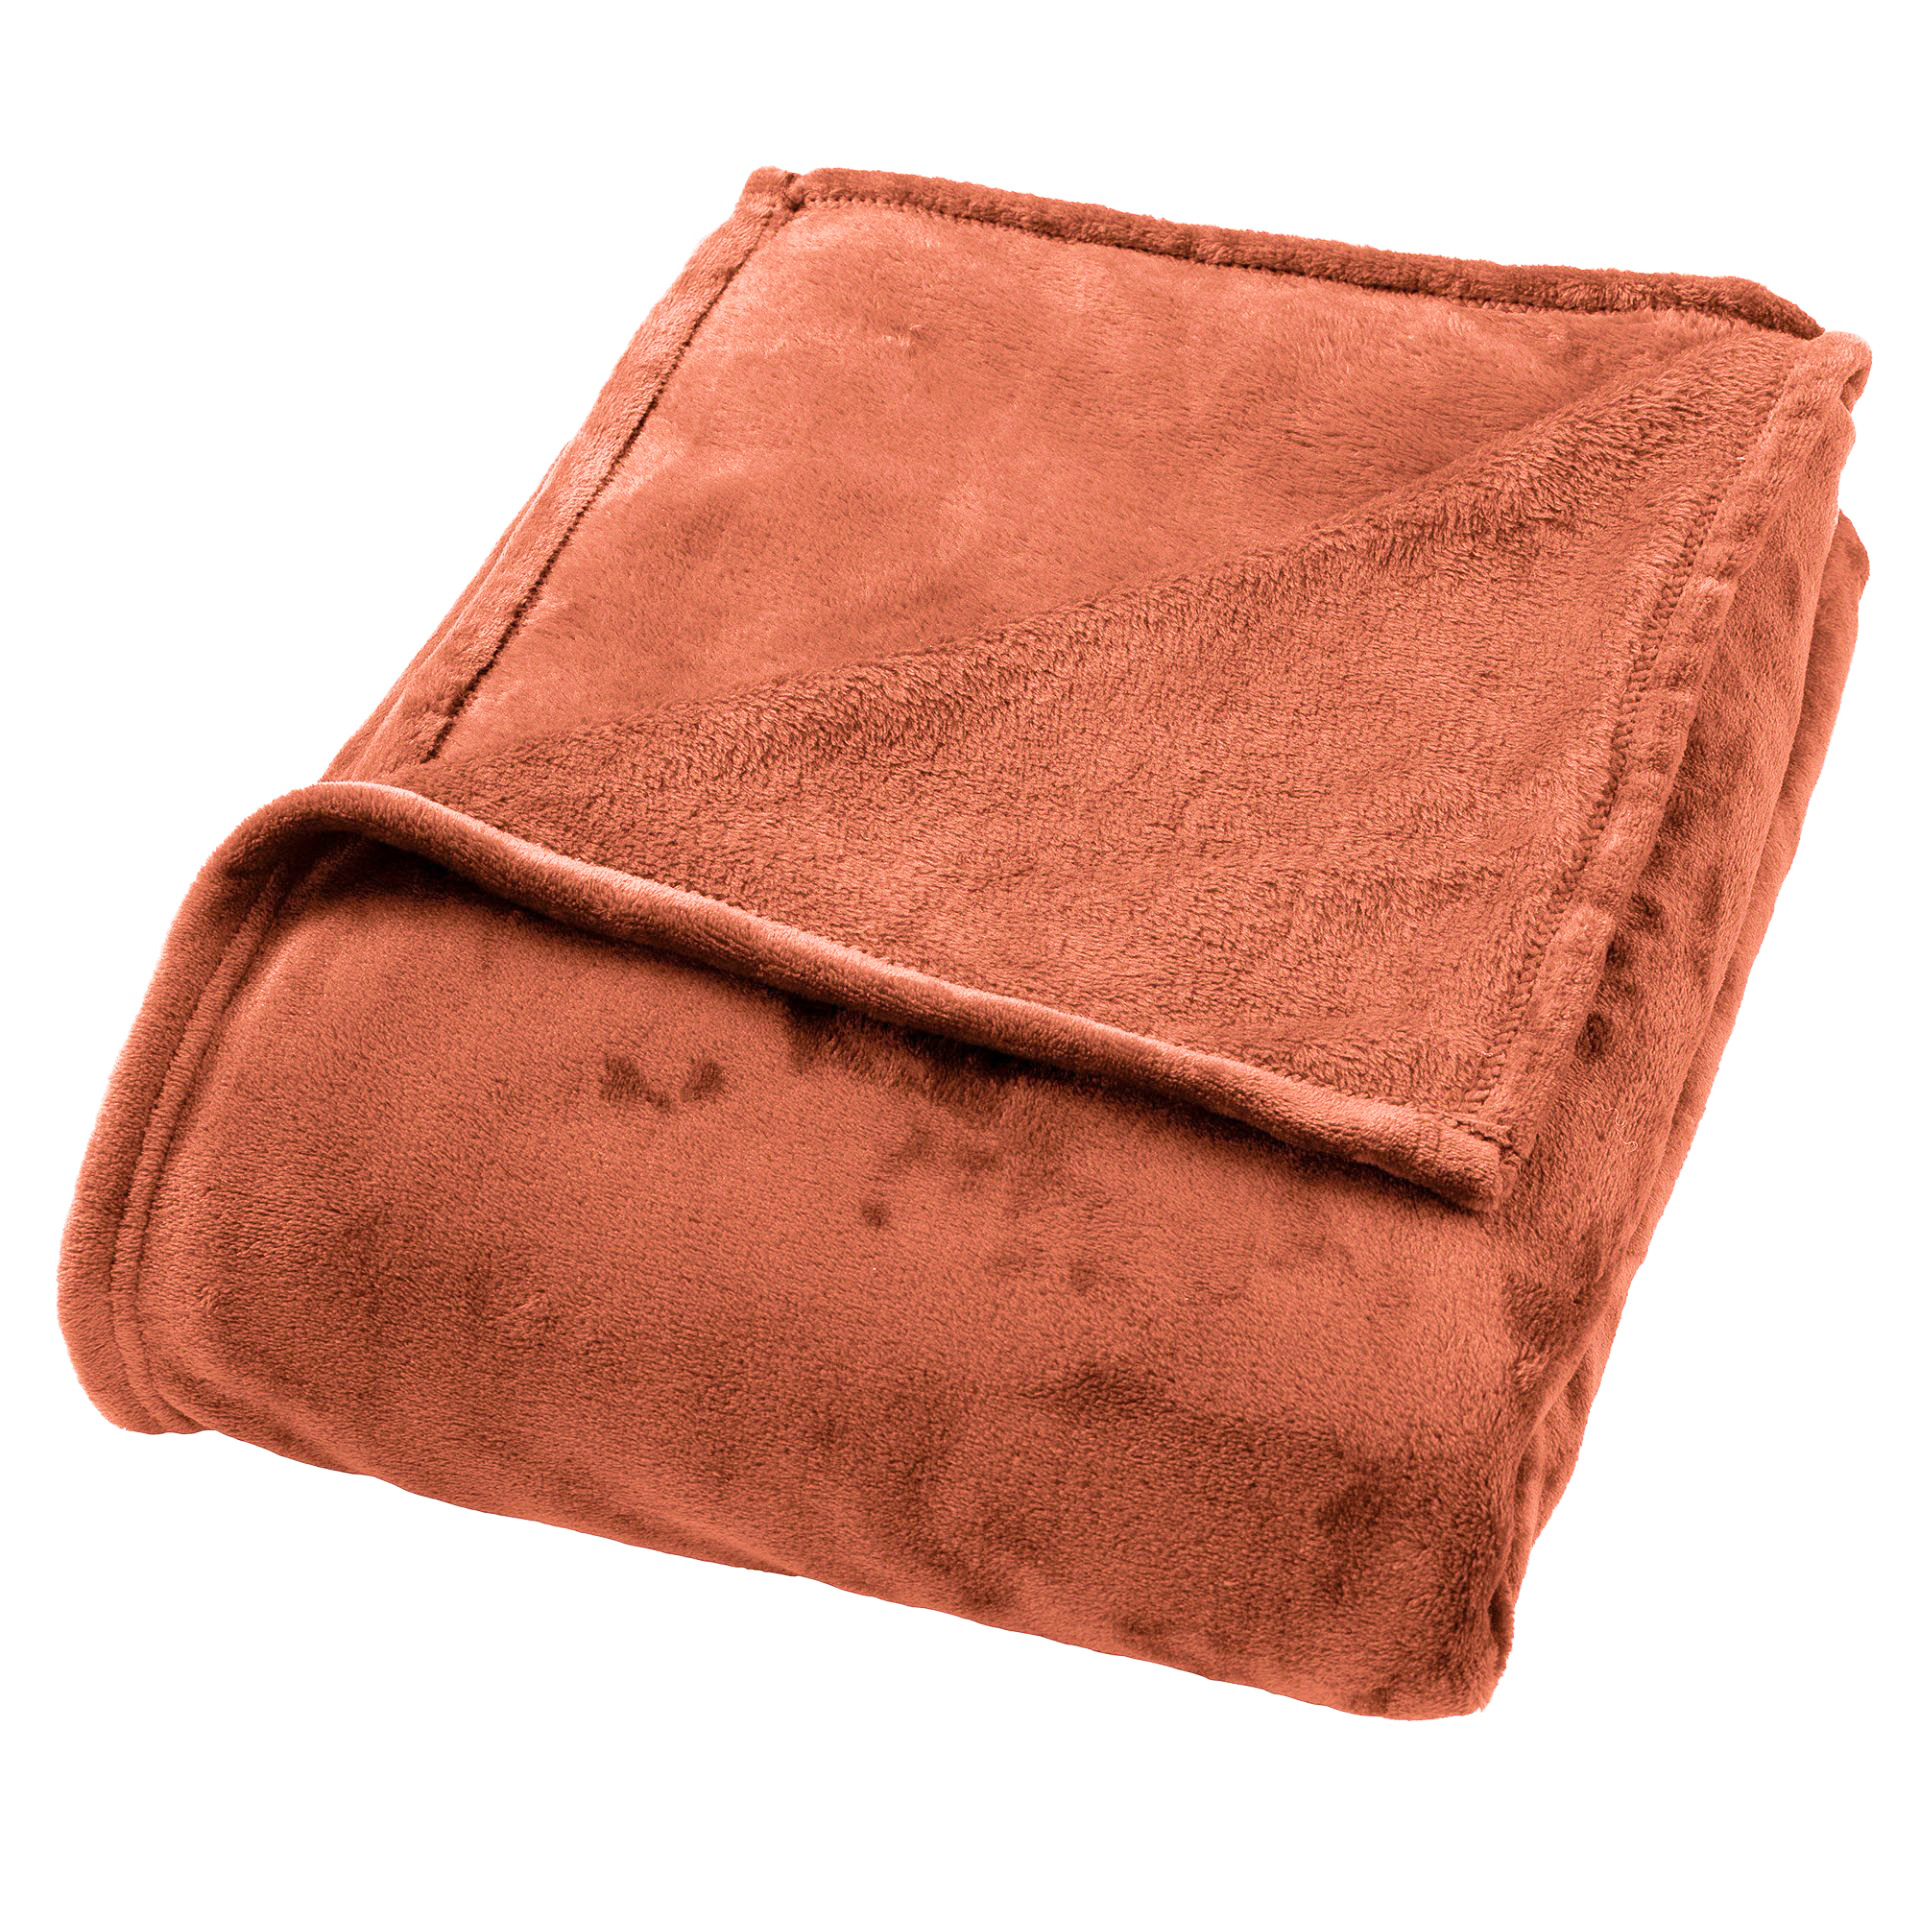 BILLY - Plaid 150x200 cm - flannel fleece - superzacht - Potters Clay - oranje terra